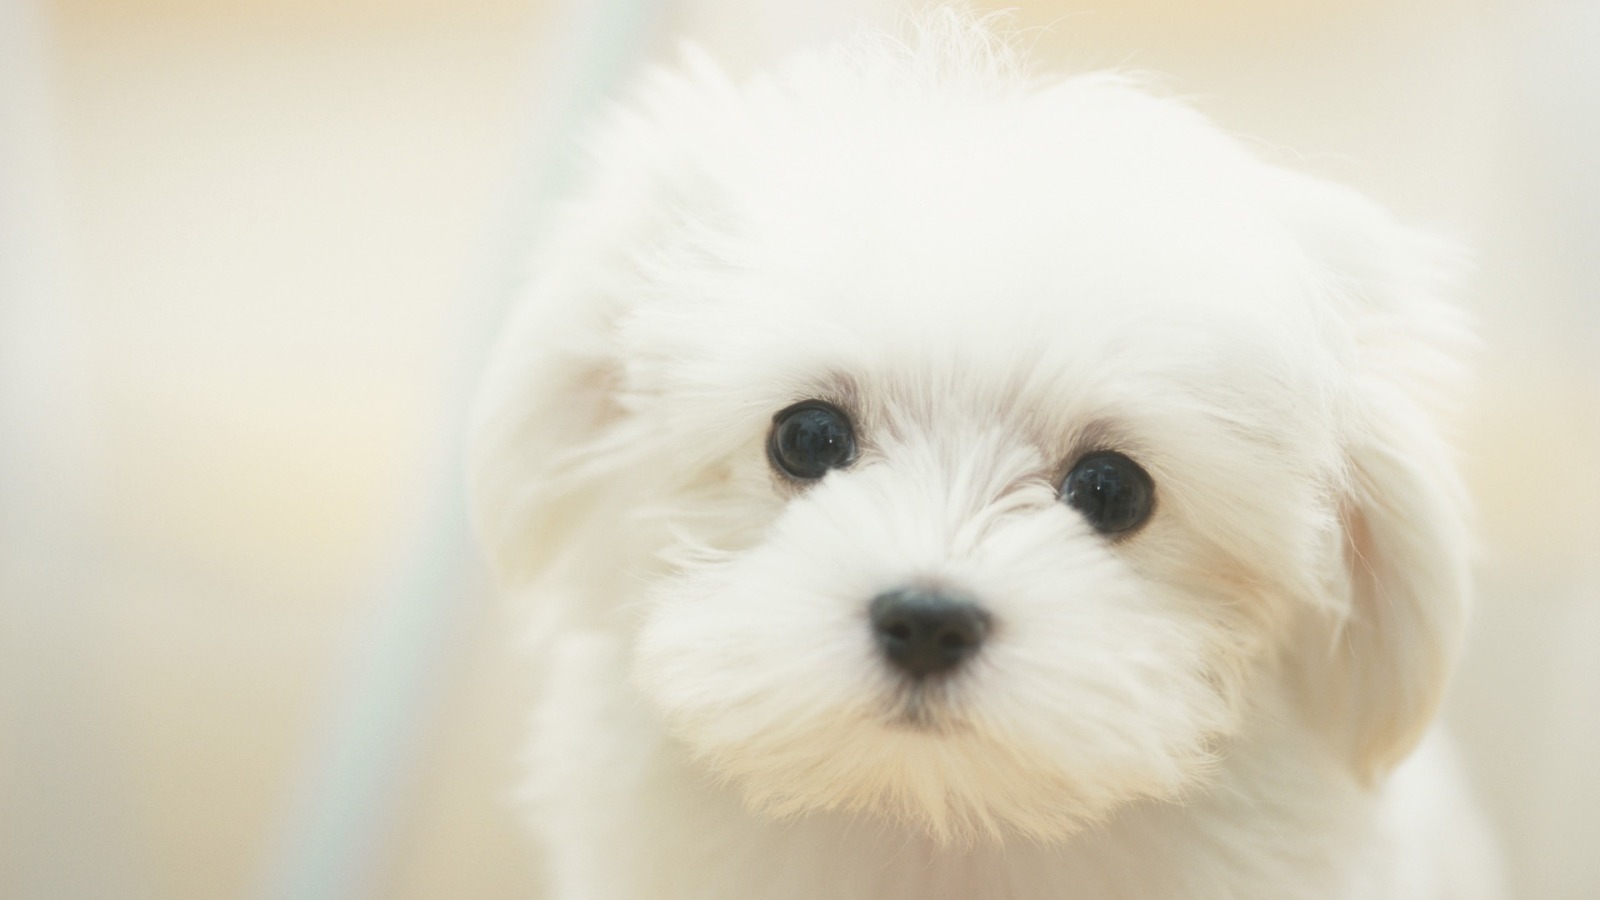 Cute Puppy wallpaper 1600x900 58332